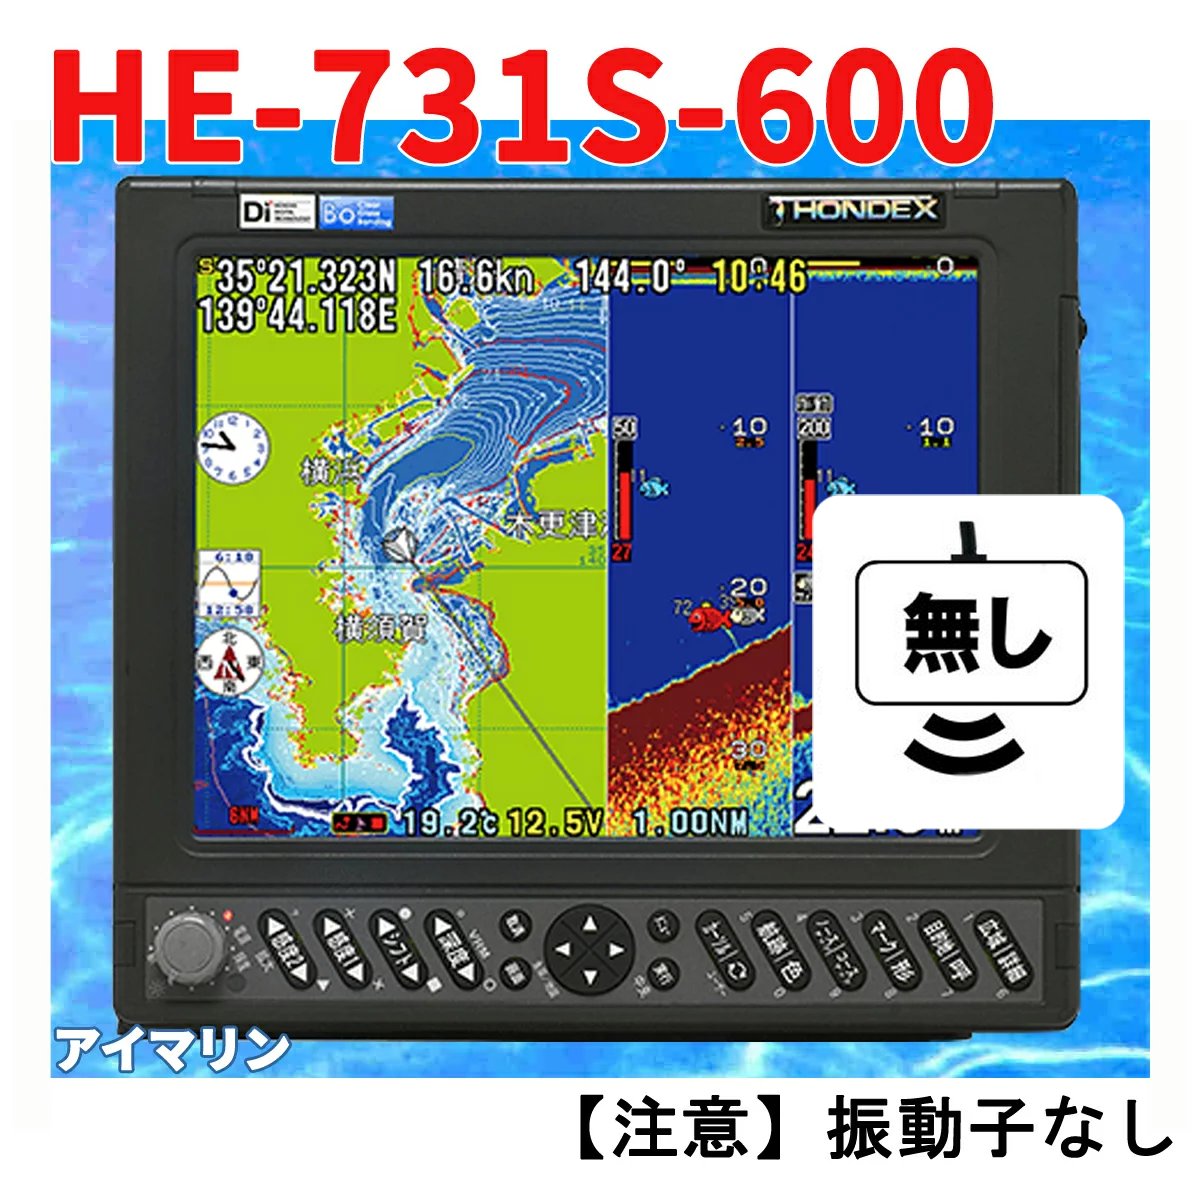 5/13 ݌ɂ HE-731S 600w Uq GPS T Aei zfbNX QTm@ HONDEX